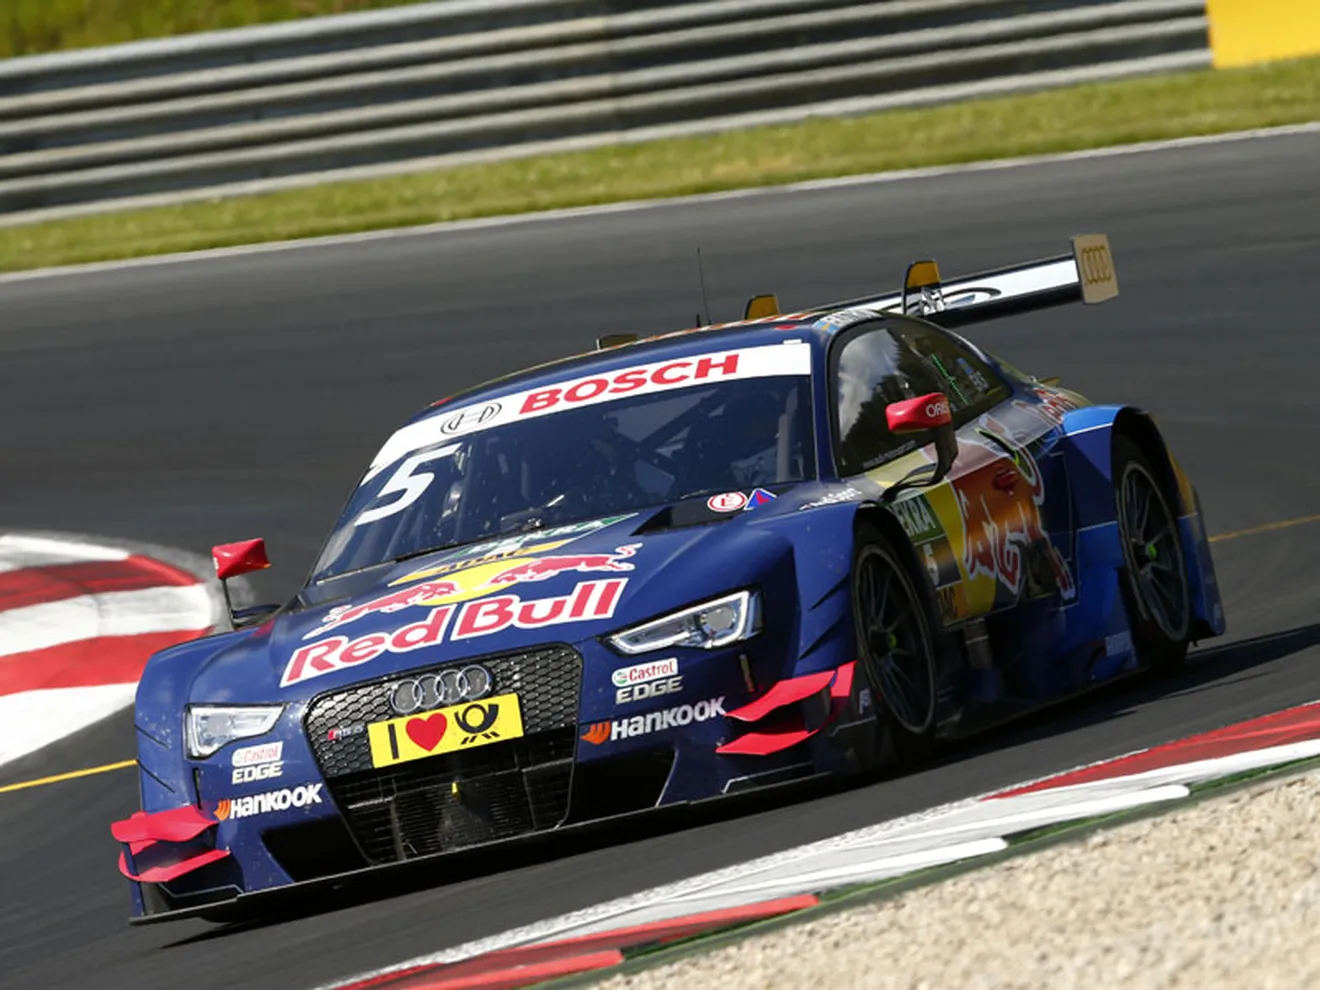 Loïc Duval se subirá al Audi RS 5 DTM en el test de Jerez